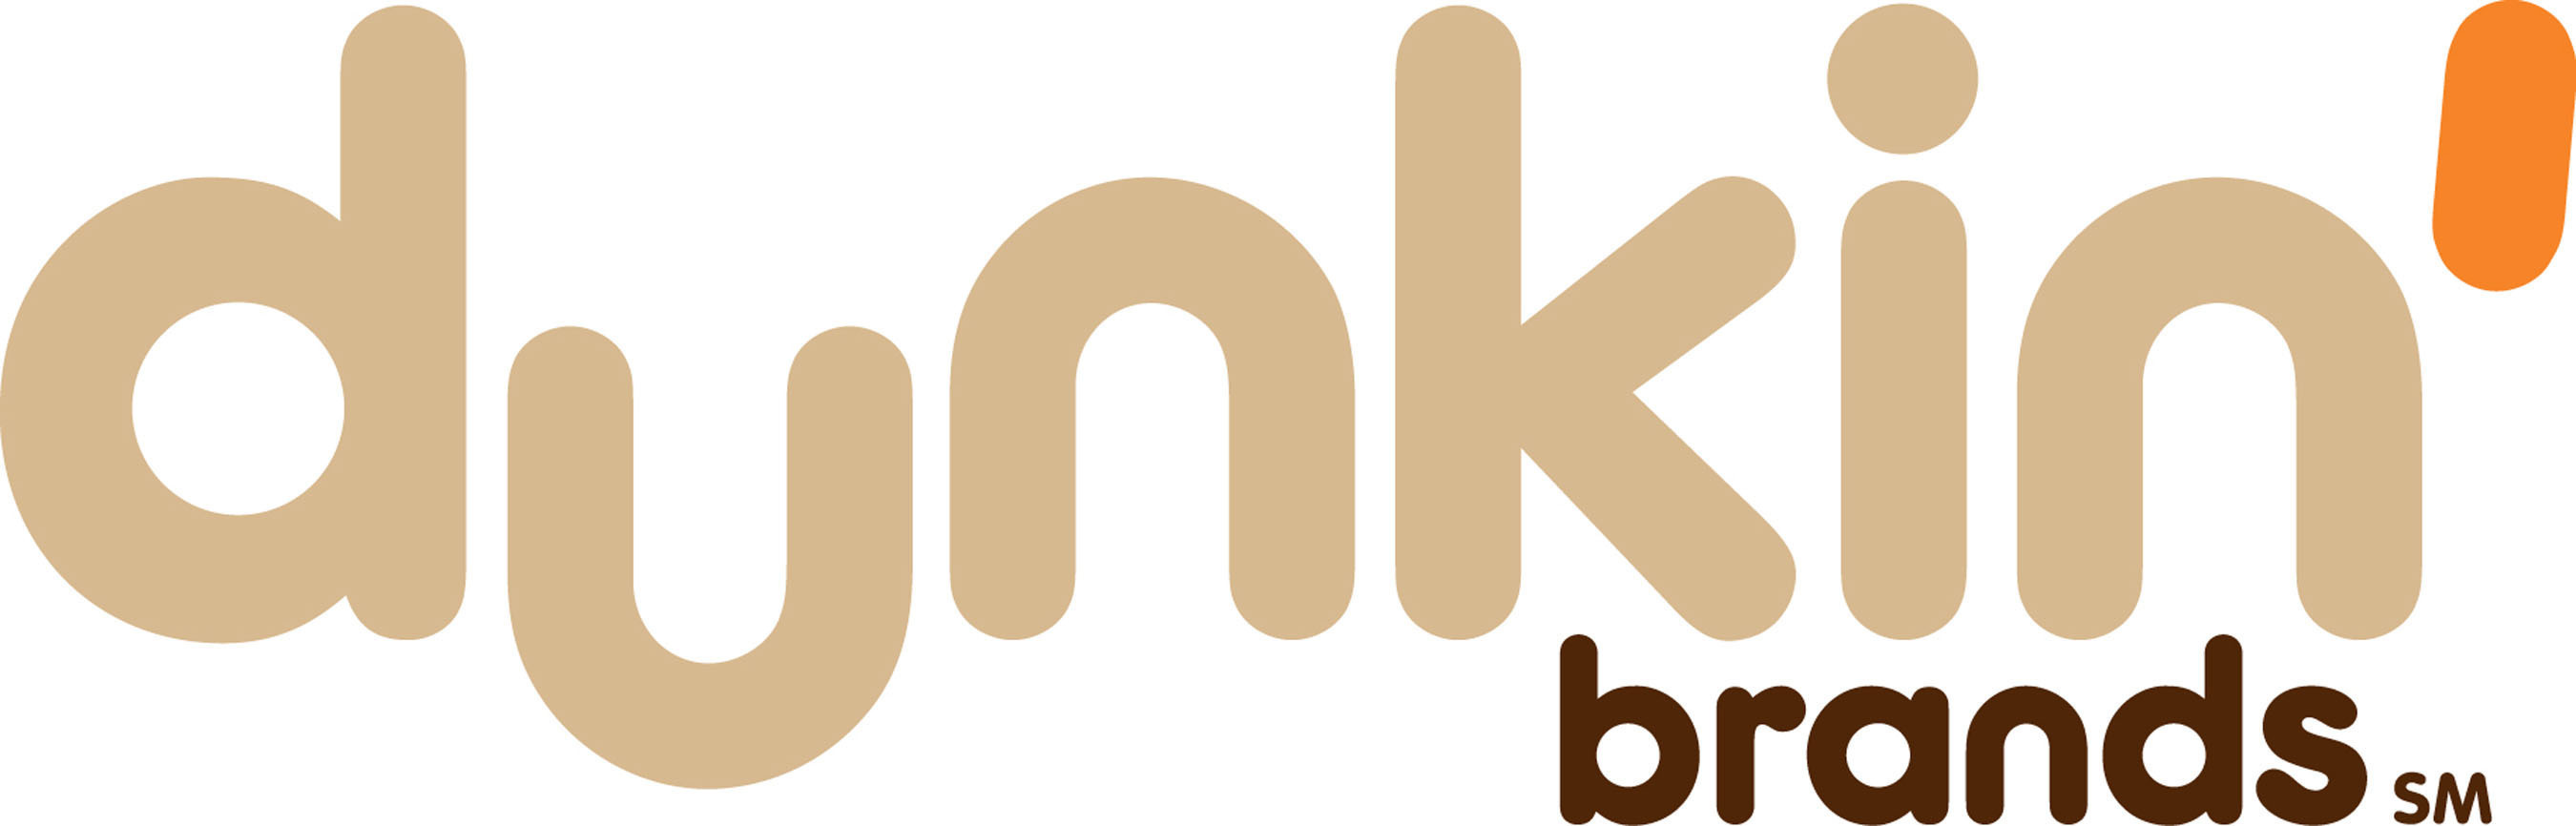 Dunkin' Brands logo (PRNewsFoto/Dunkin' Brands Group, Inc.)